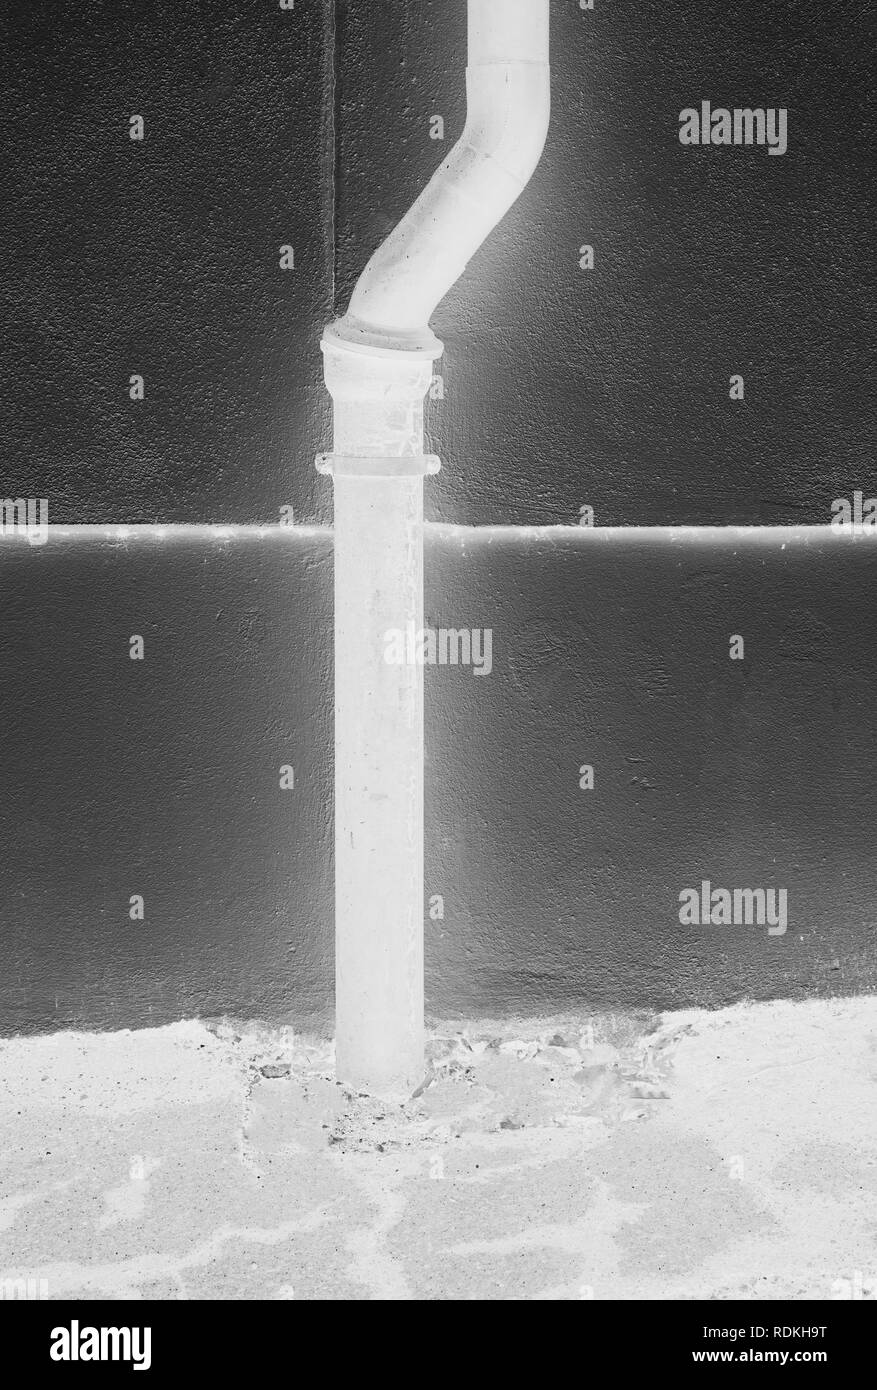 Gouttière blanche surréaliste devant un mur noir - couleurs inversées donner un conte comme l'effet de cette image Banque D'Images